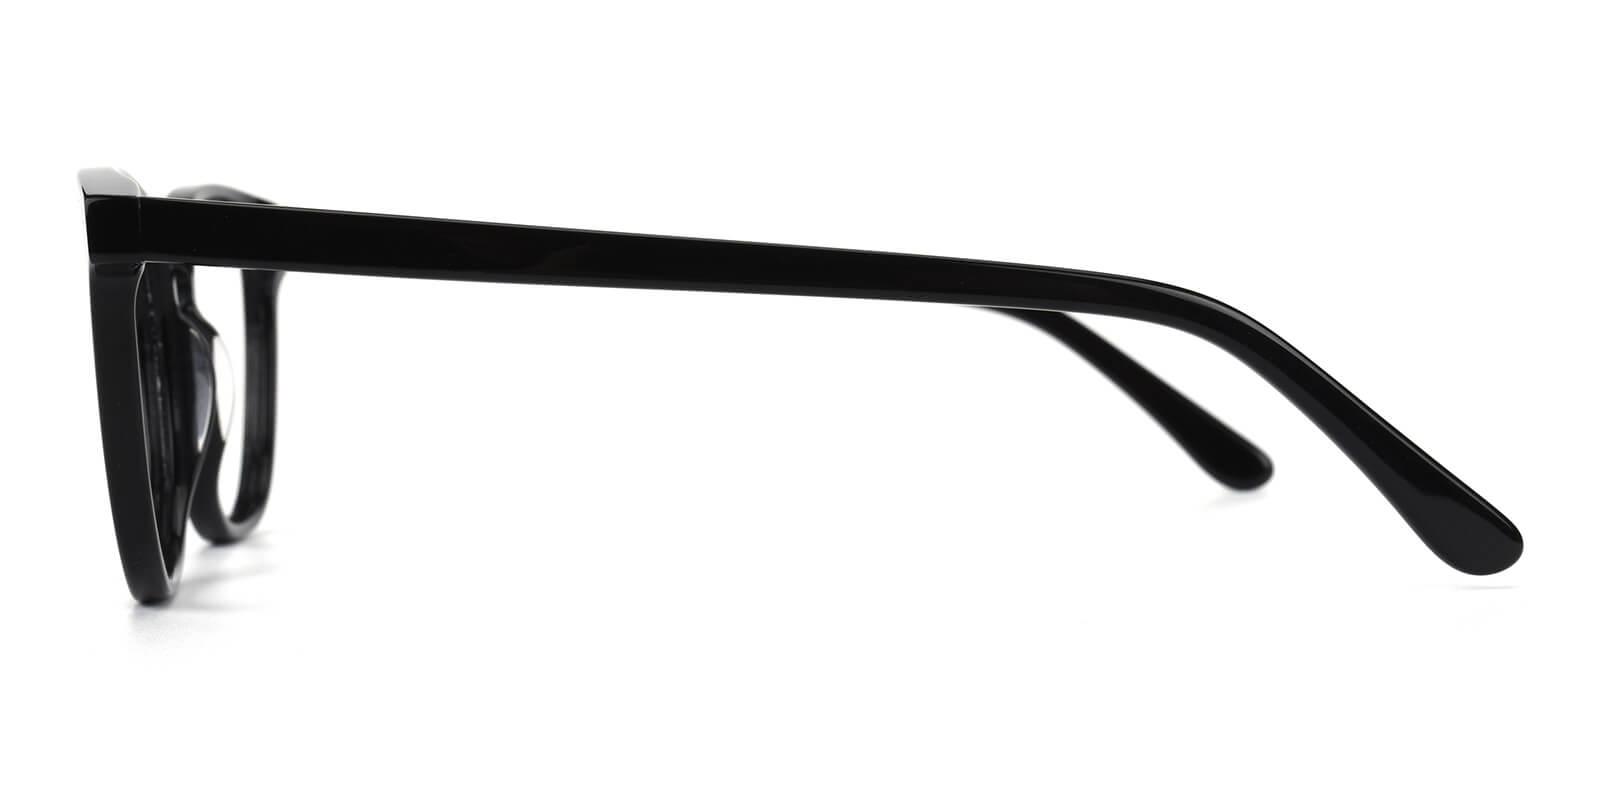 Genius-Black-Square / Rectangle-Acetate-Eyeglasses-detail